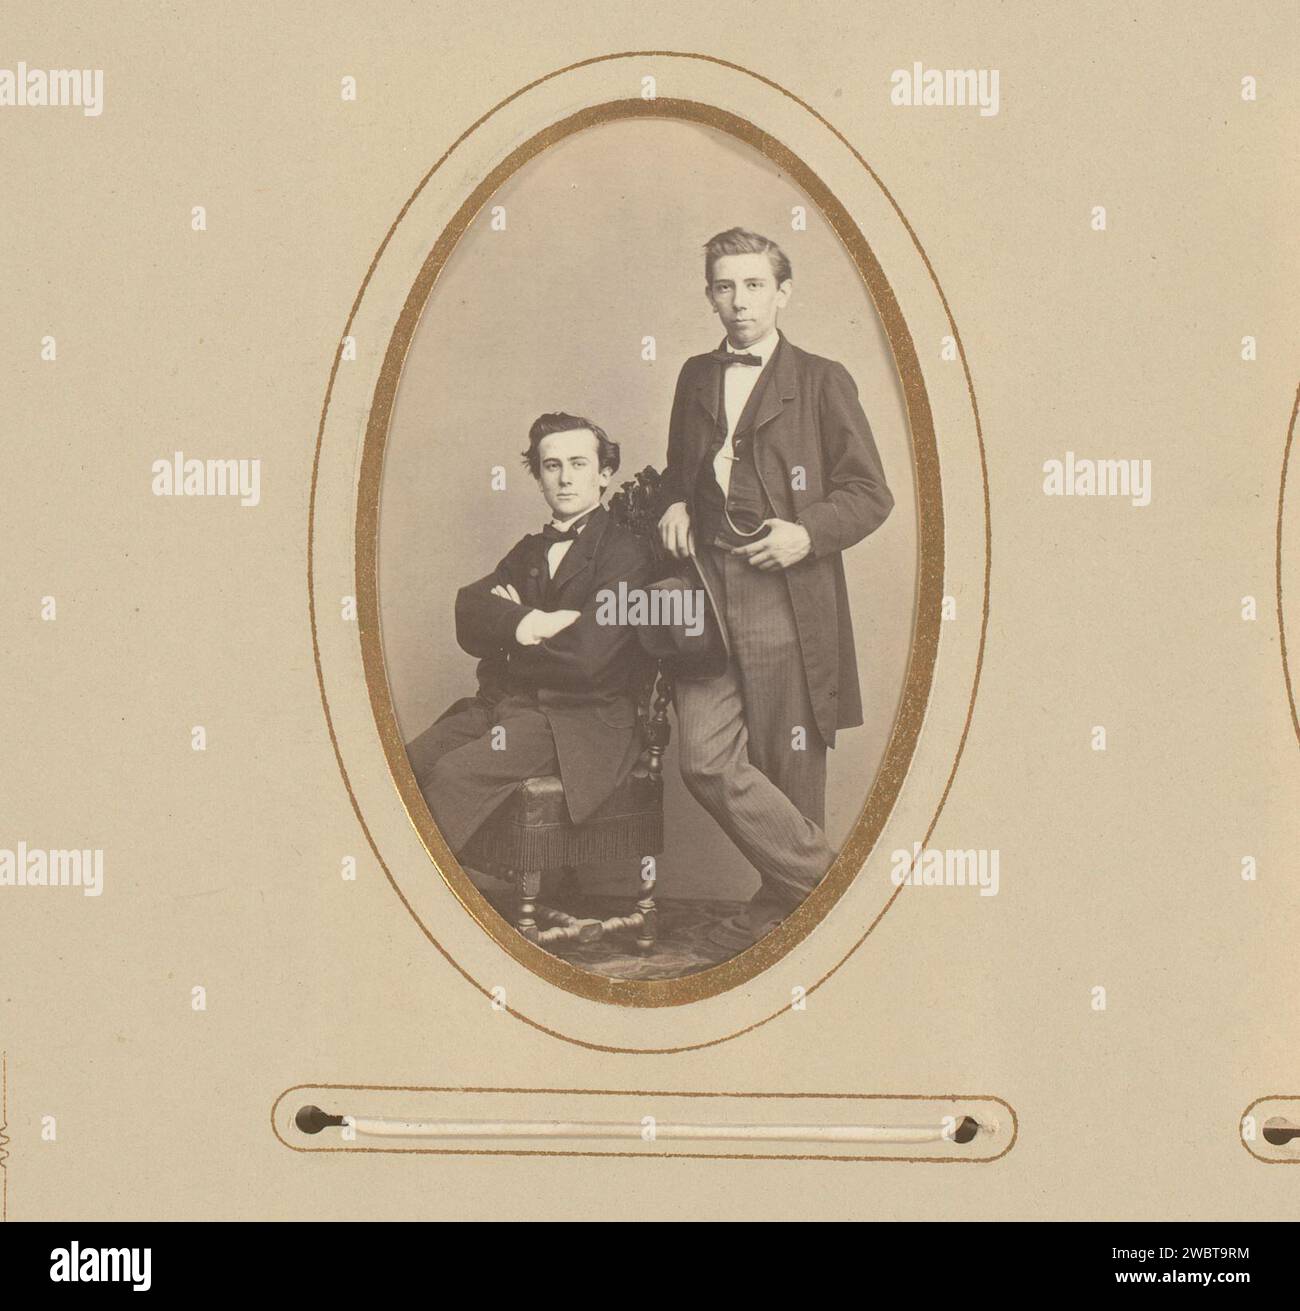 Porträt zweier junger Männer, F. Springmeier, 1850 - 1900 Fotografie. Visitenkarte dieses Foto ist Teil eines Albums. Elberfeld-Karton. Fotografischer Trägeralbumendruck historischer Personen. Jugendliche, junger Mann, Jugendliche (+ zwei Personen) Stockfoto